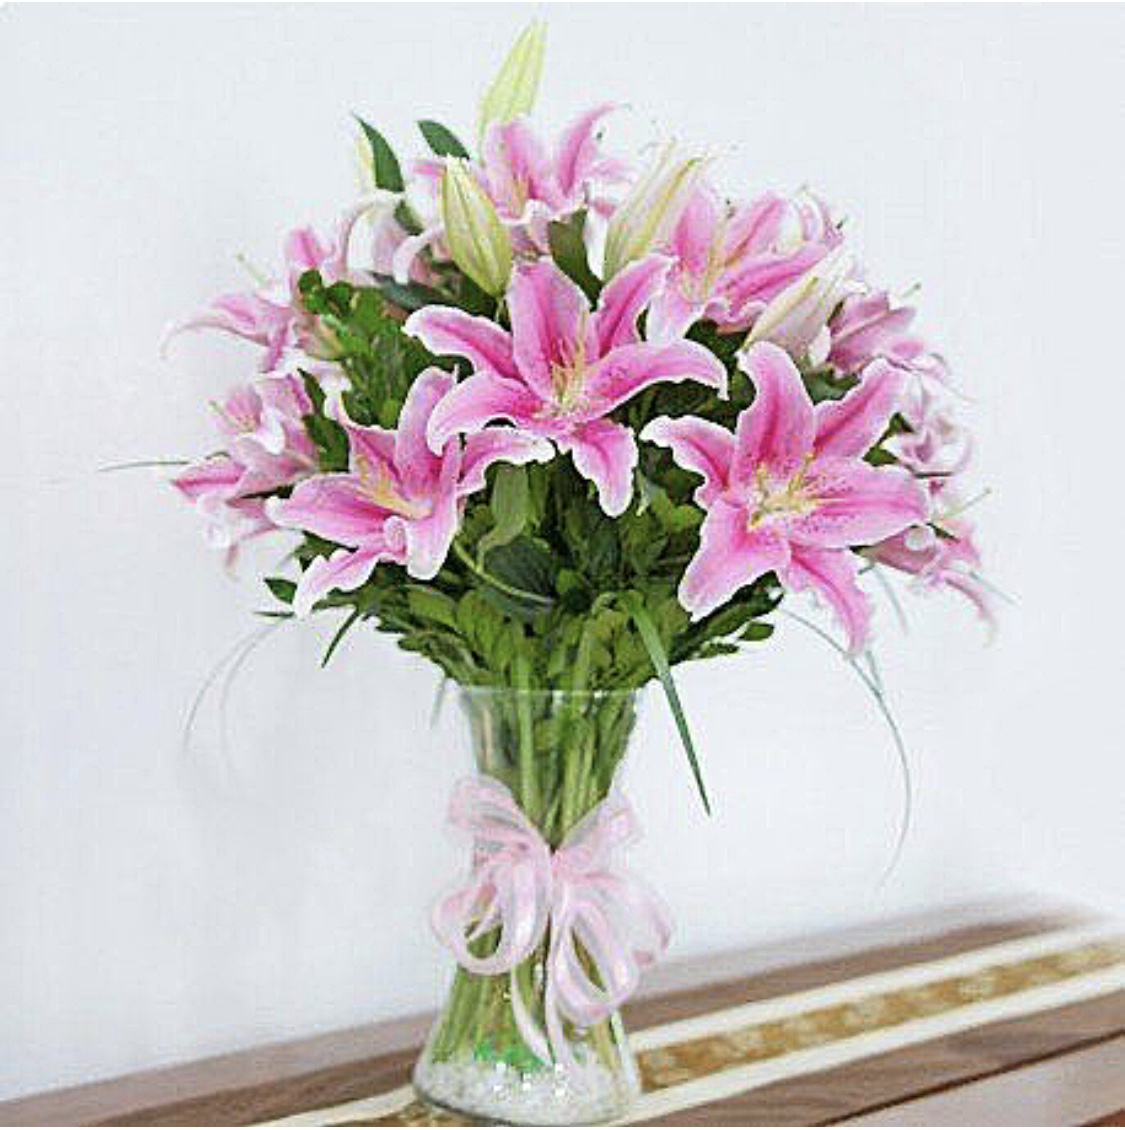 Crini roz in vaza: Flori in vaza